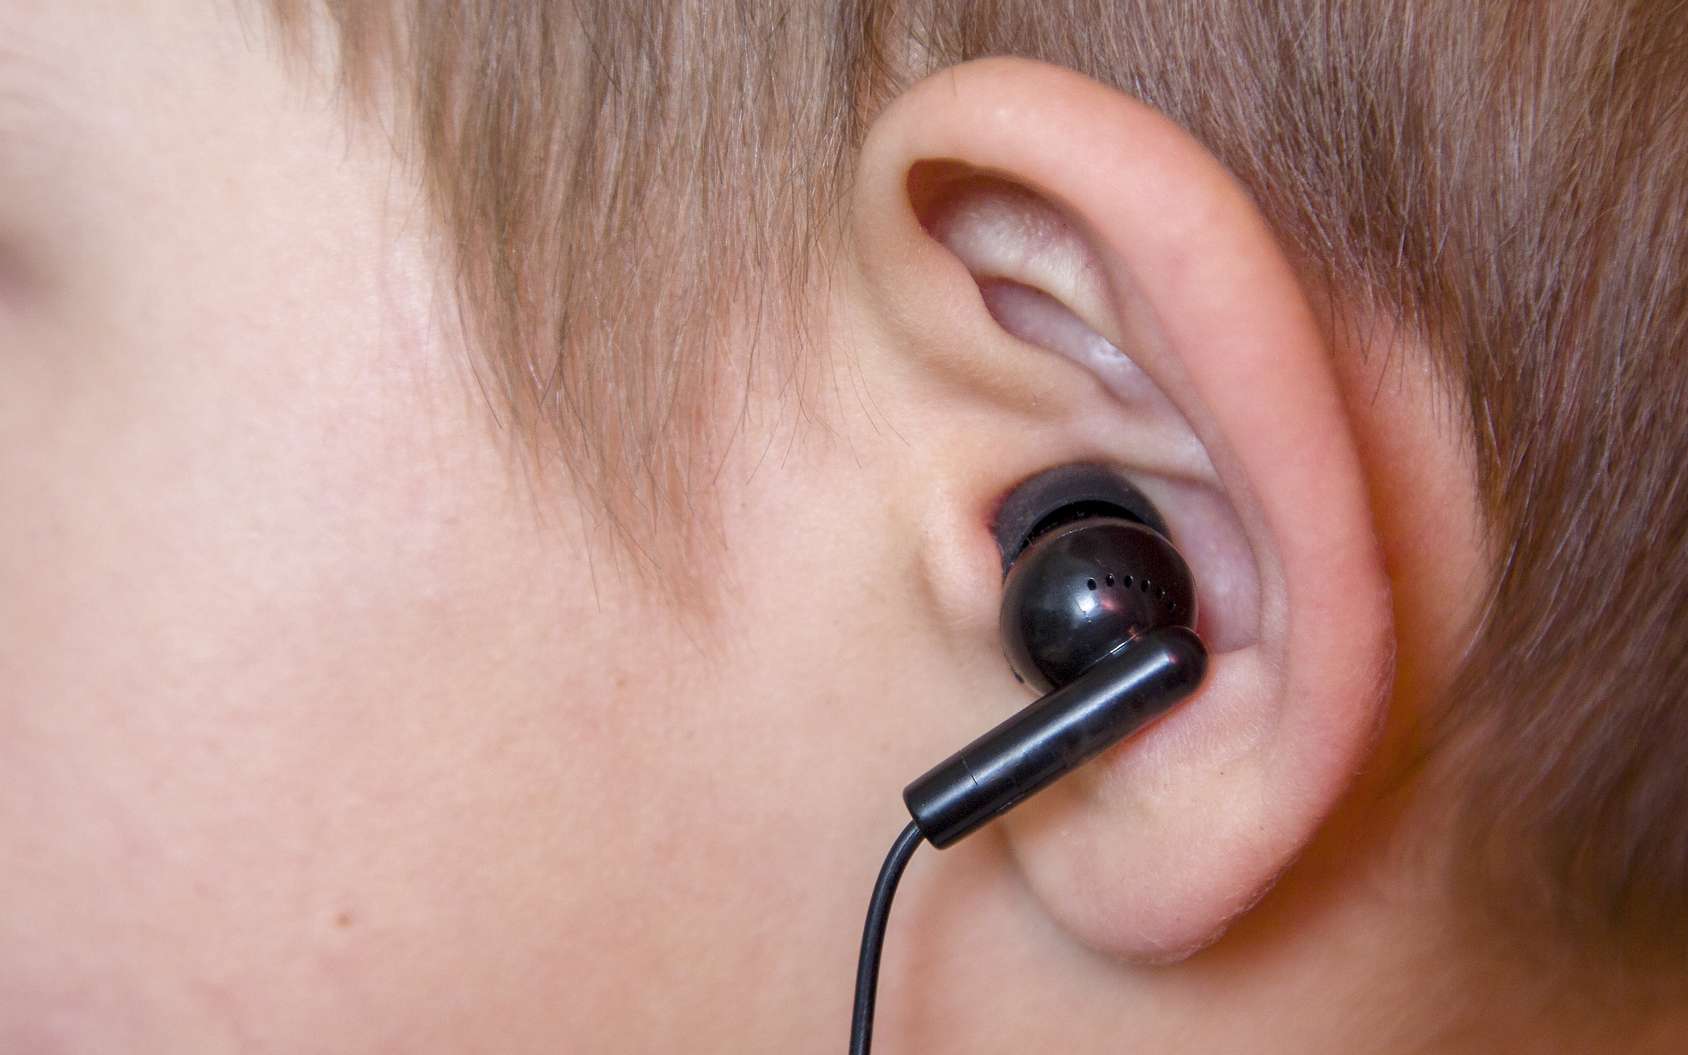 Inde : Un patient prétend avoir avalé ses écouteurs... Les médecins ne tardent pas à découvrir la vérité